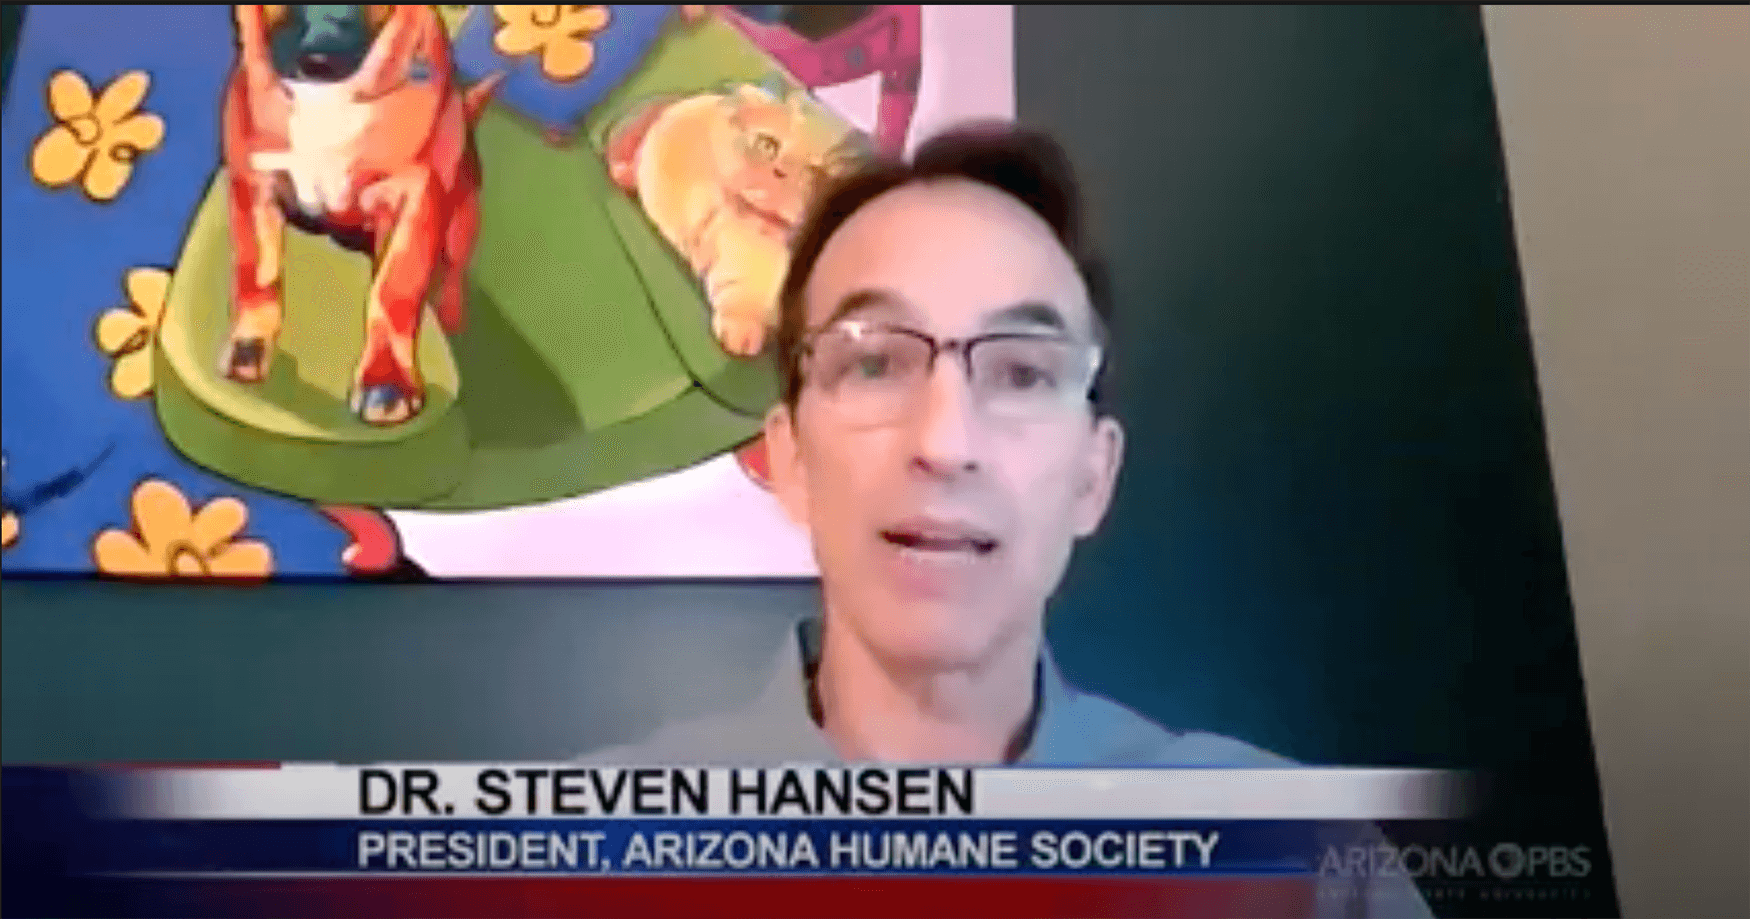 Steve Hansen speaking on the news